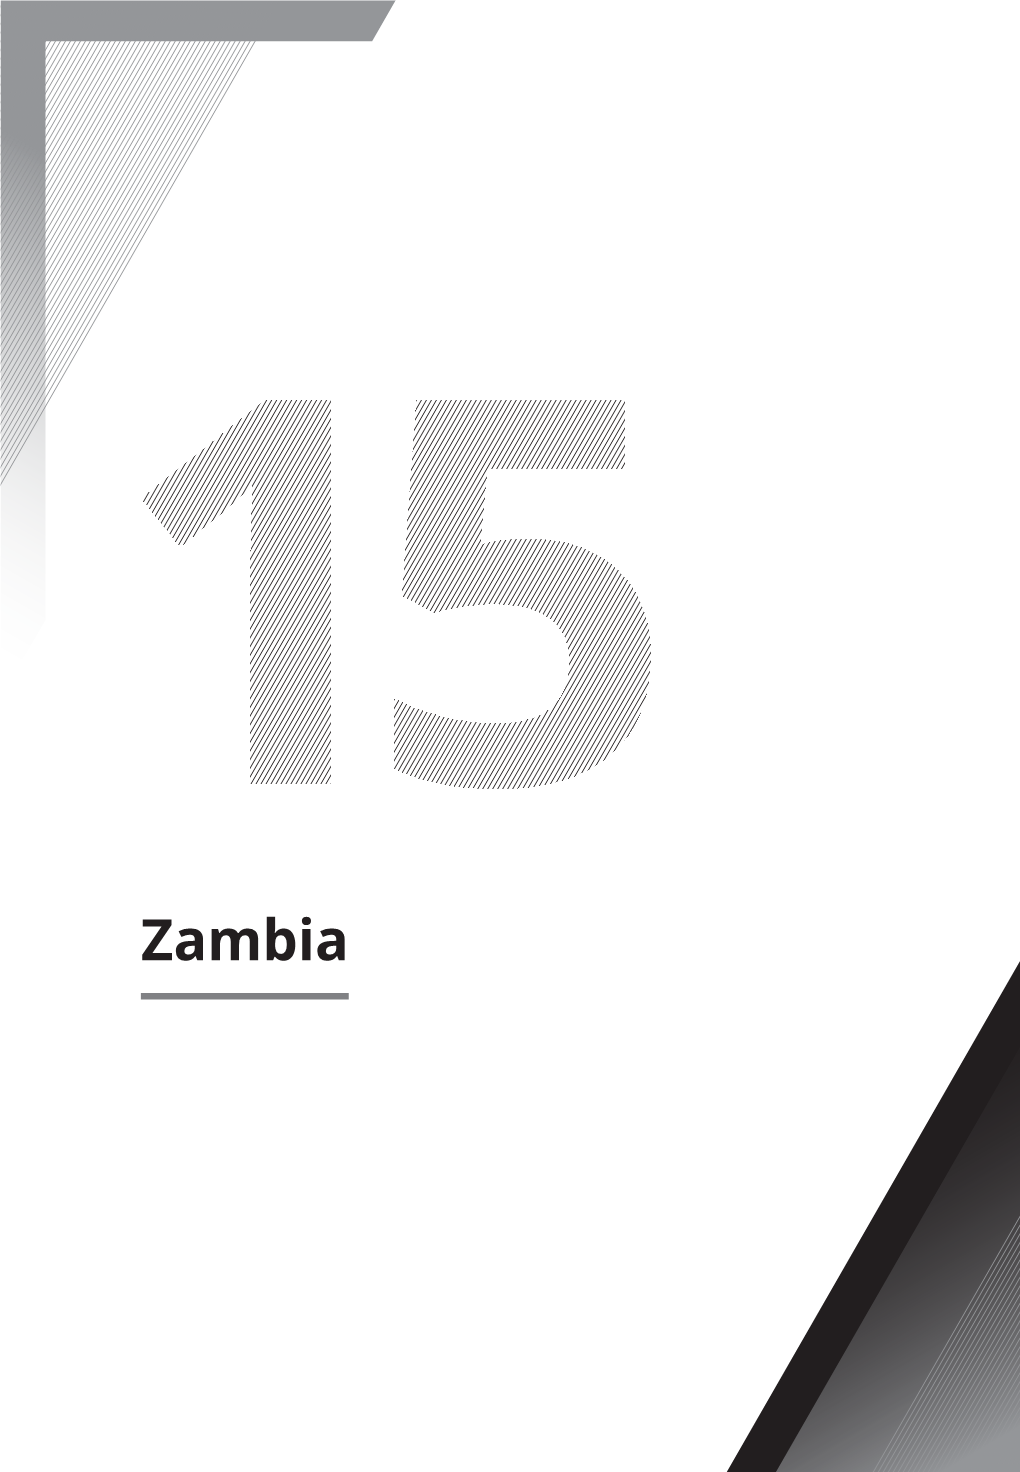 Zambia 1 Introduction1